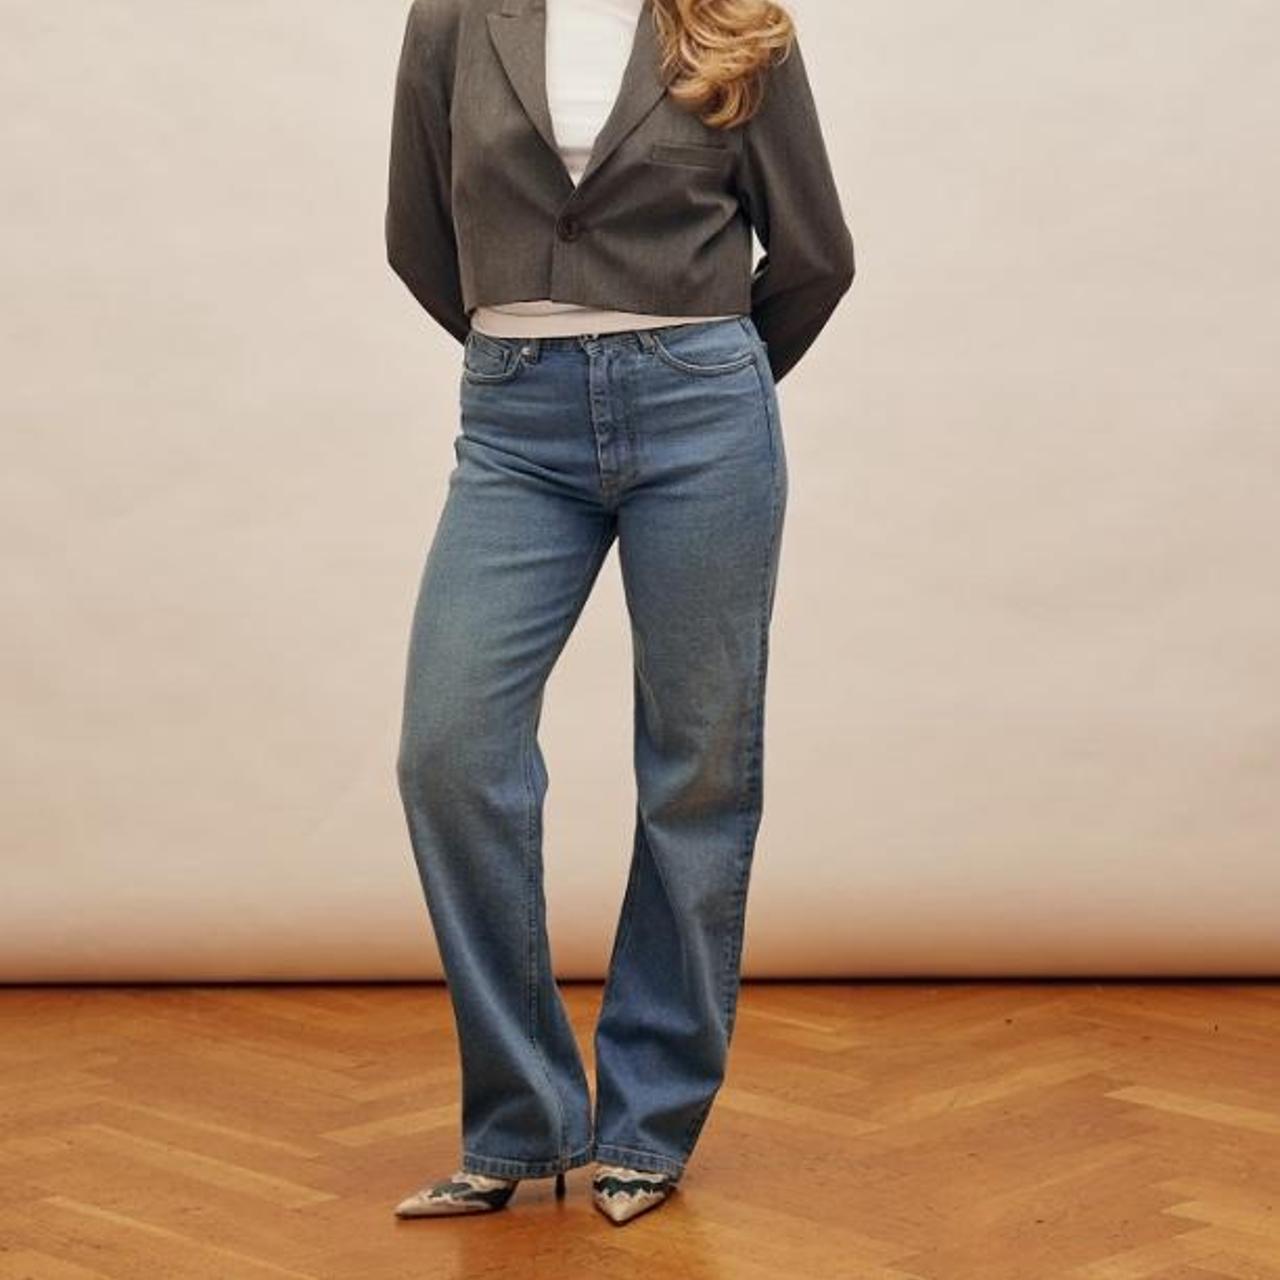 Djerf Avenue Women's Jeans (4)